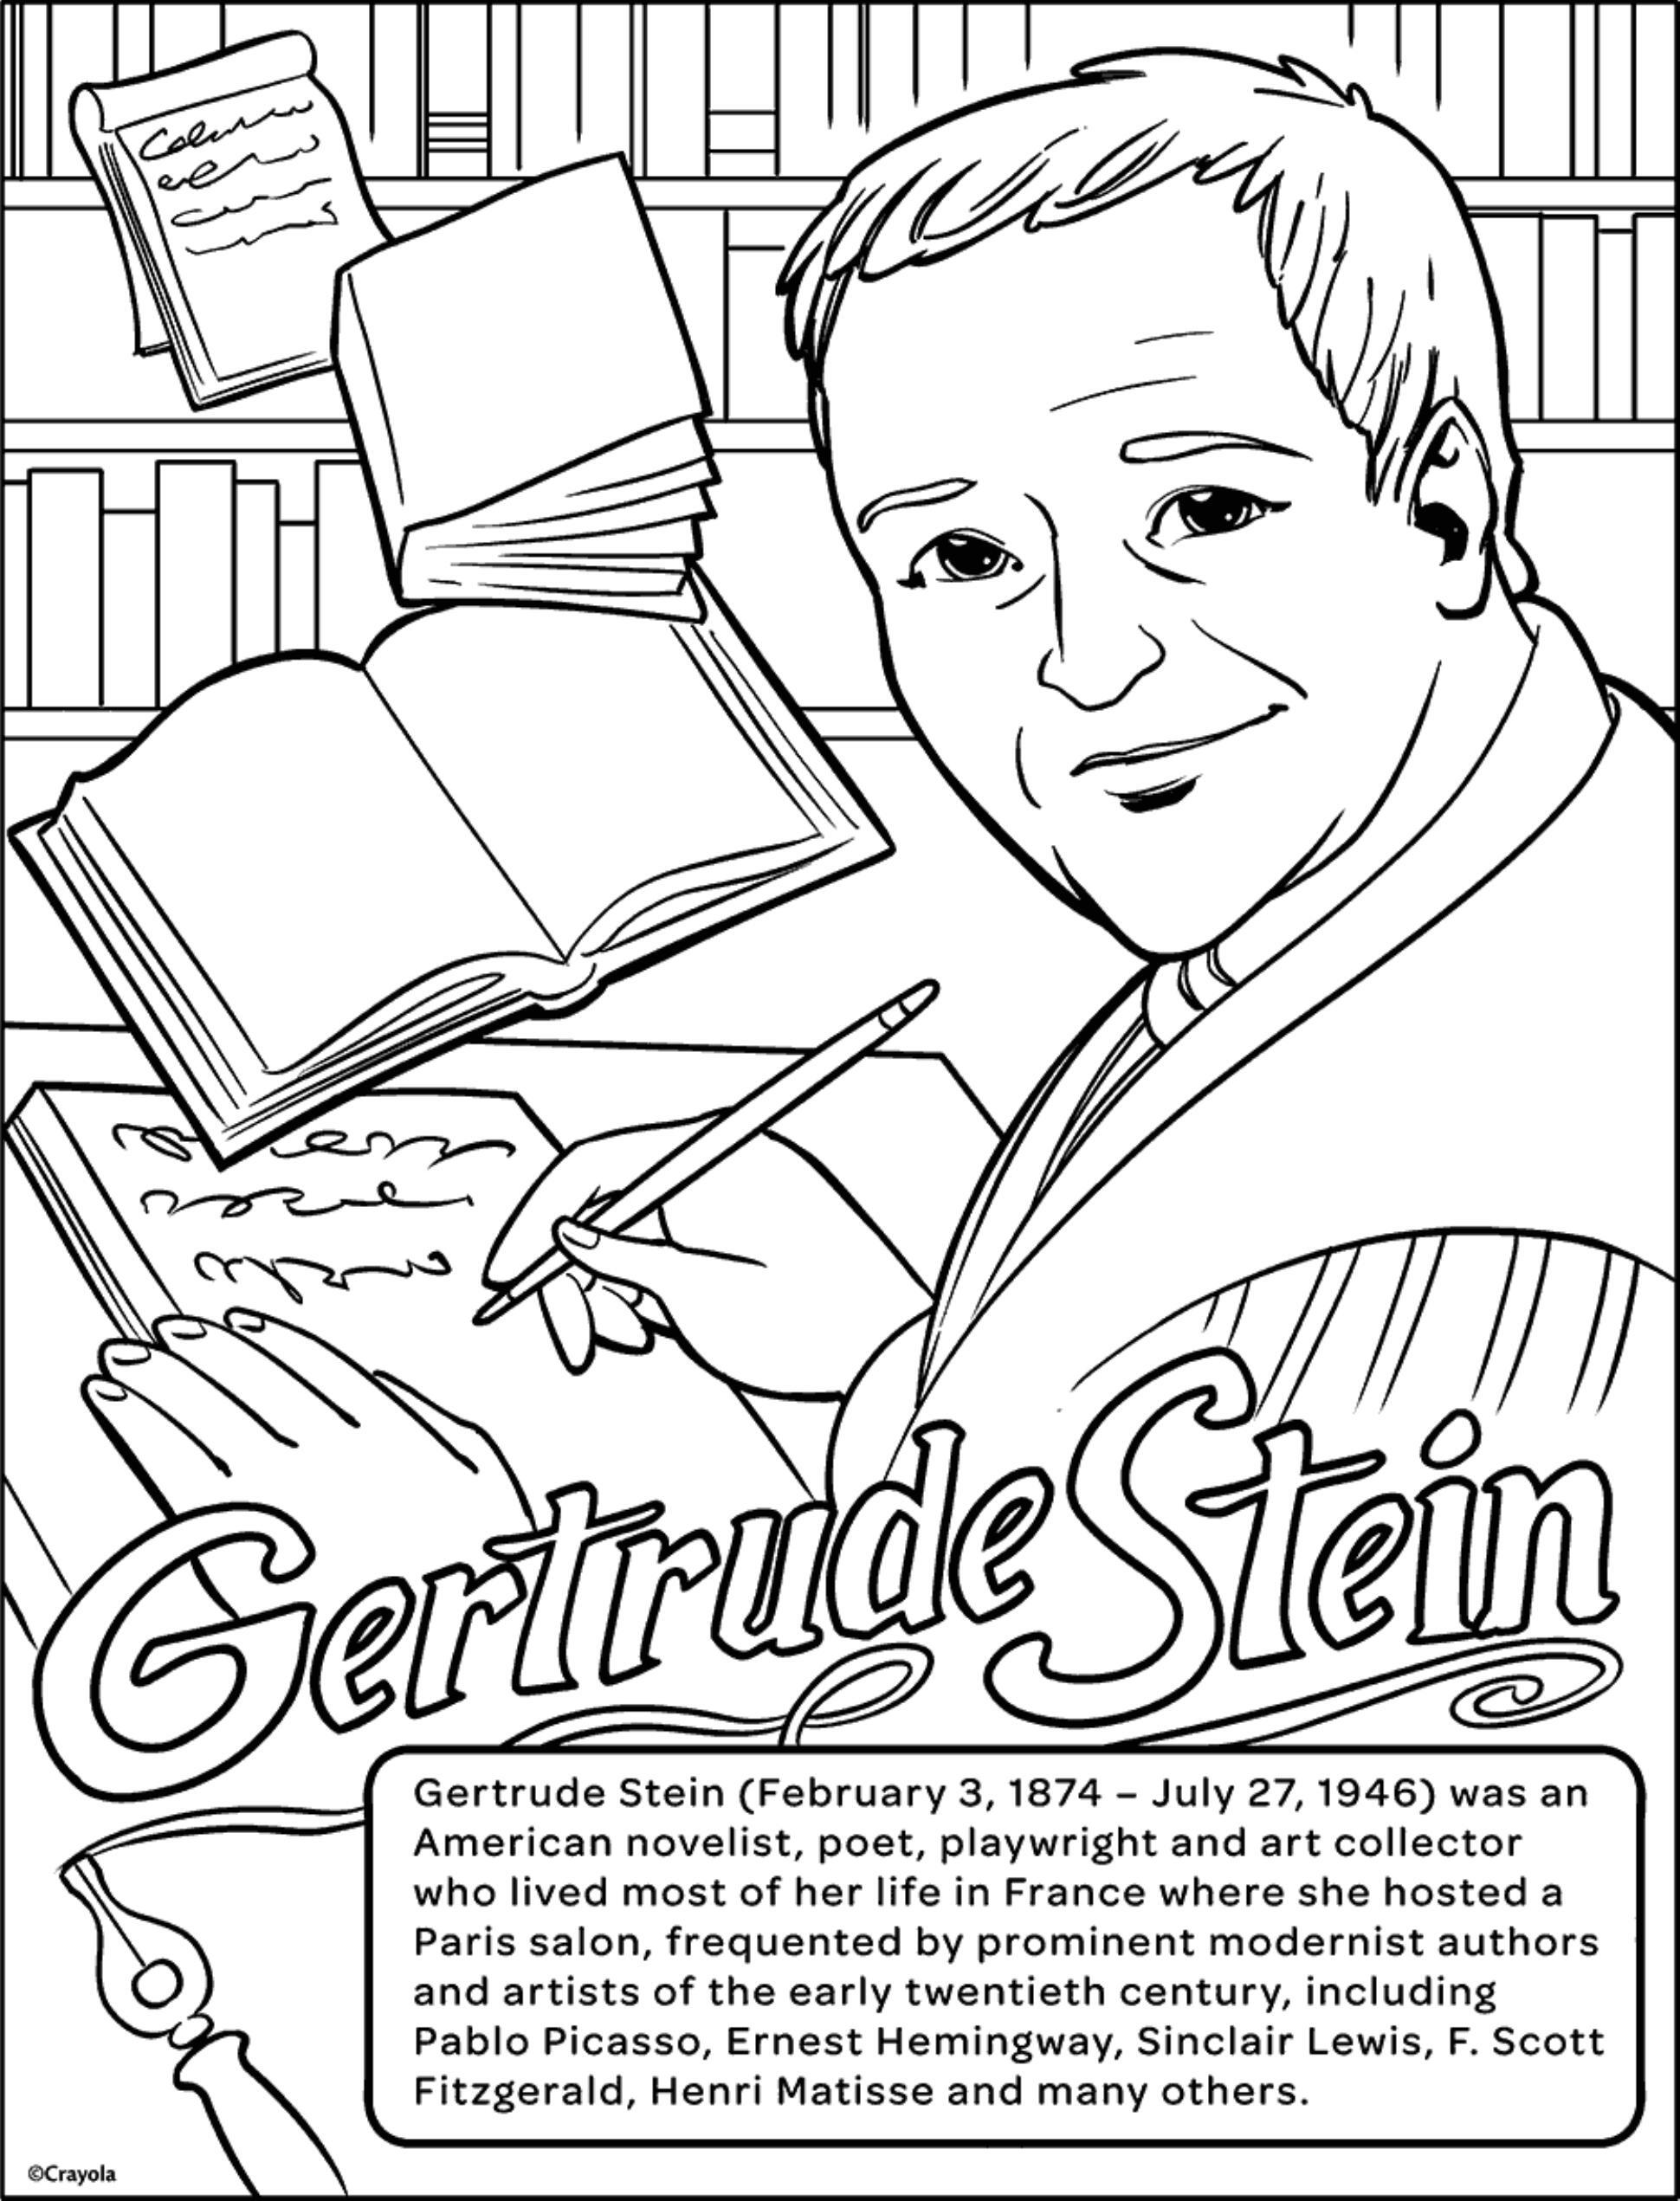 Historical Figure Gertrude Stein